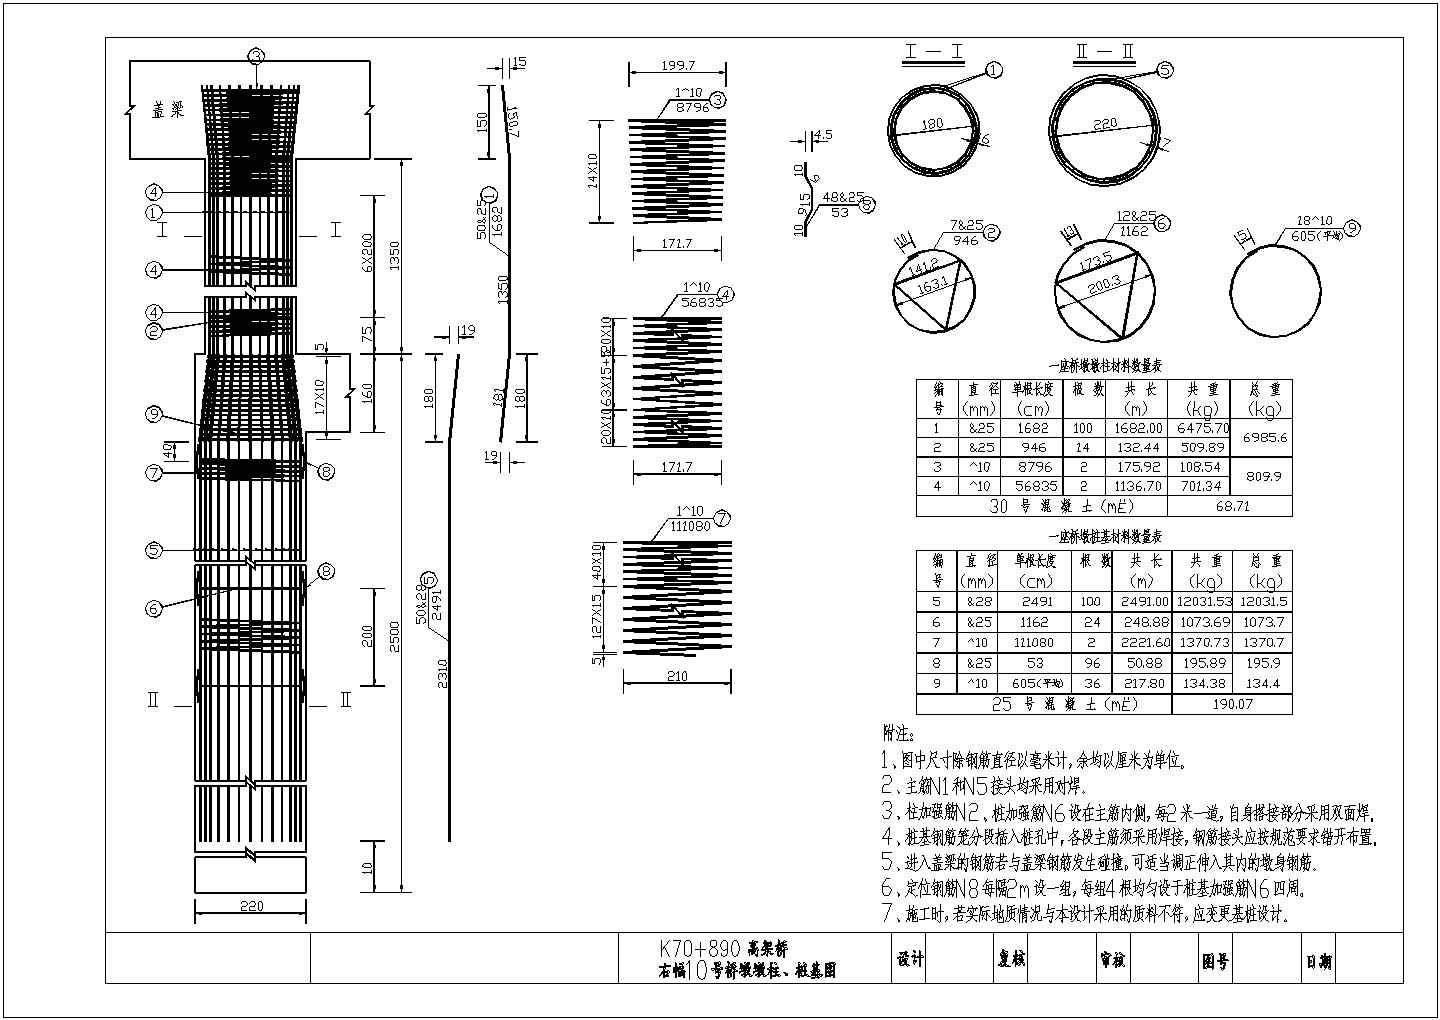 K70+890高架桥桥墩墩柱、桩基构造节点详图-图二